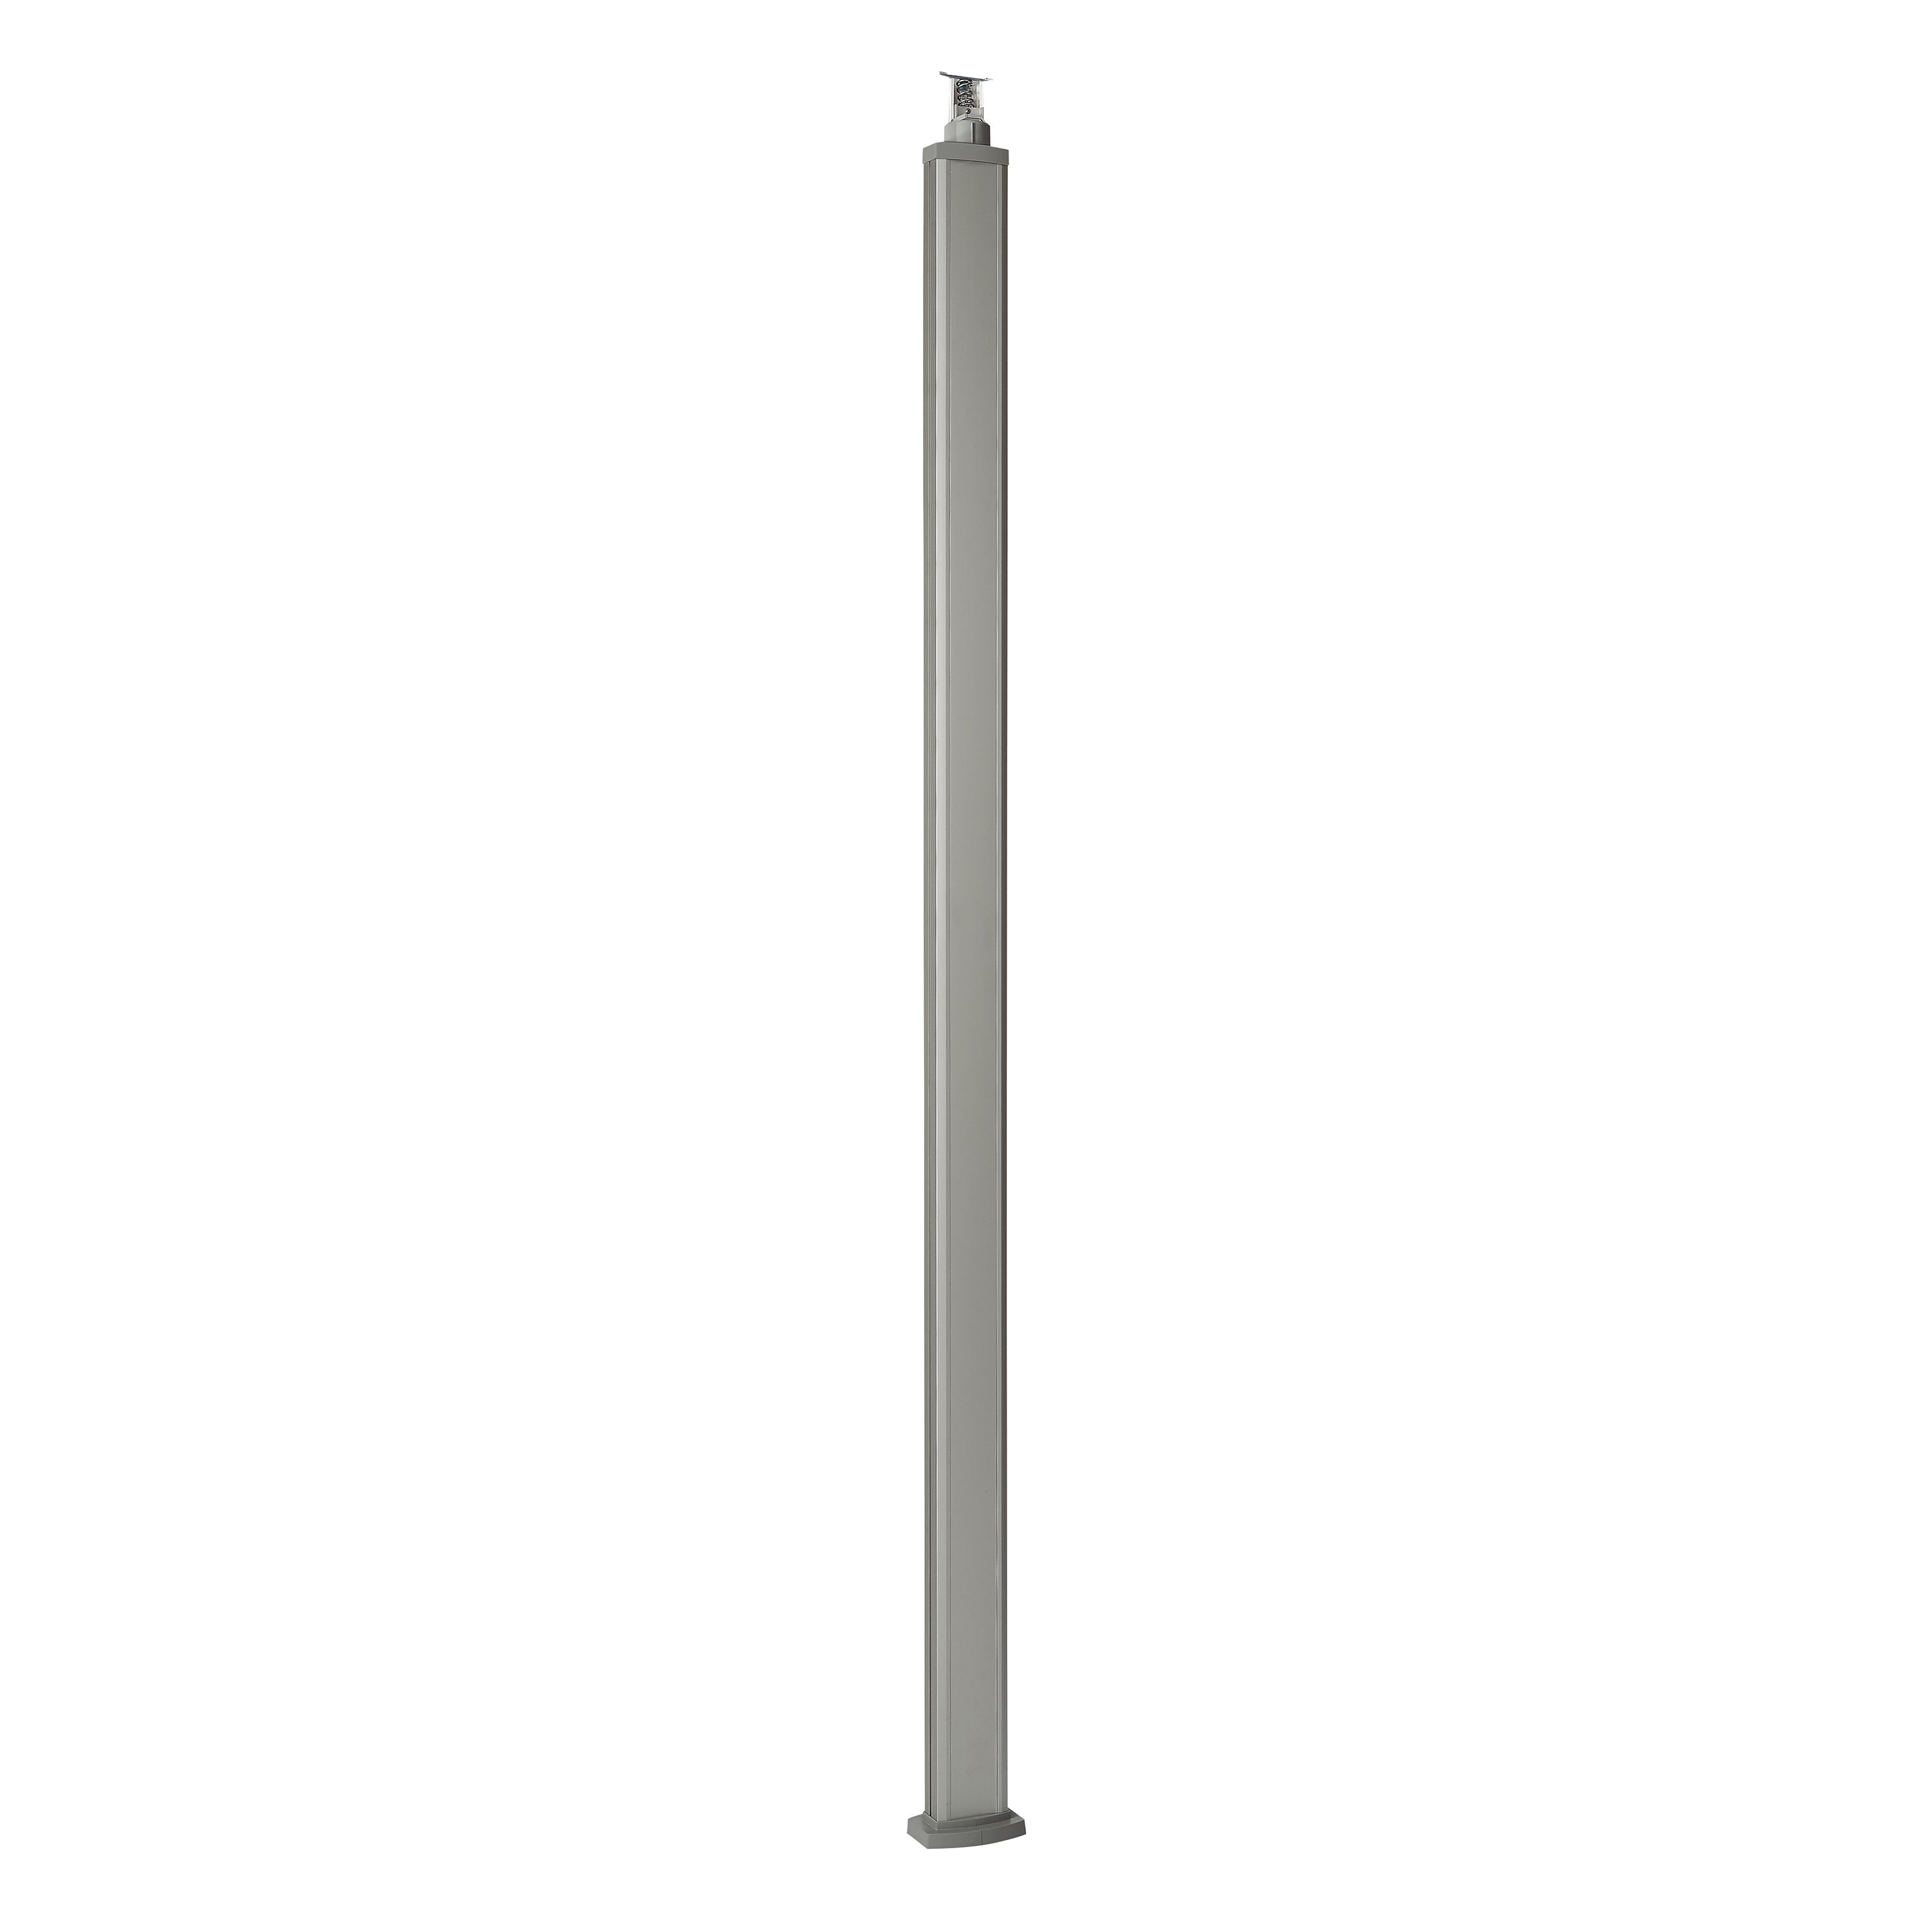 Универсальная колонна алюминиевая с крышкой из алюминия 1 секция, высота 2,77 метра, с возможностью увеличения высоты до 4,05 метра, цвет алюминий 653111 Legrand